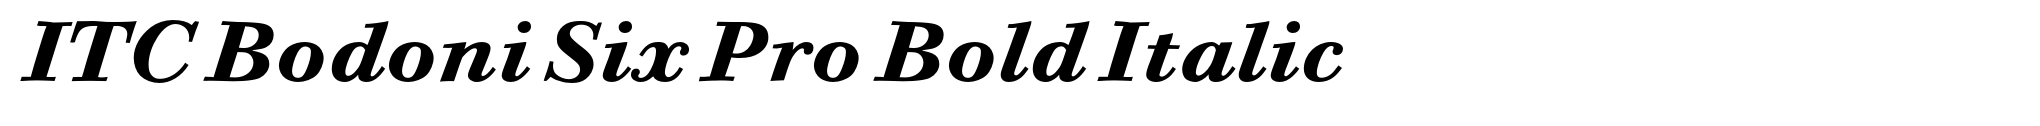 ITC Bodoni Six Pro Bold Italic image